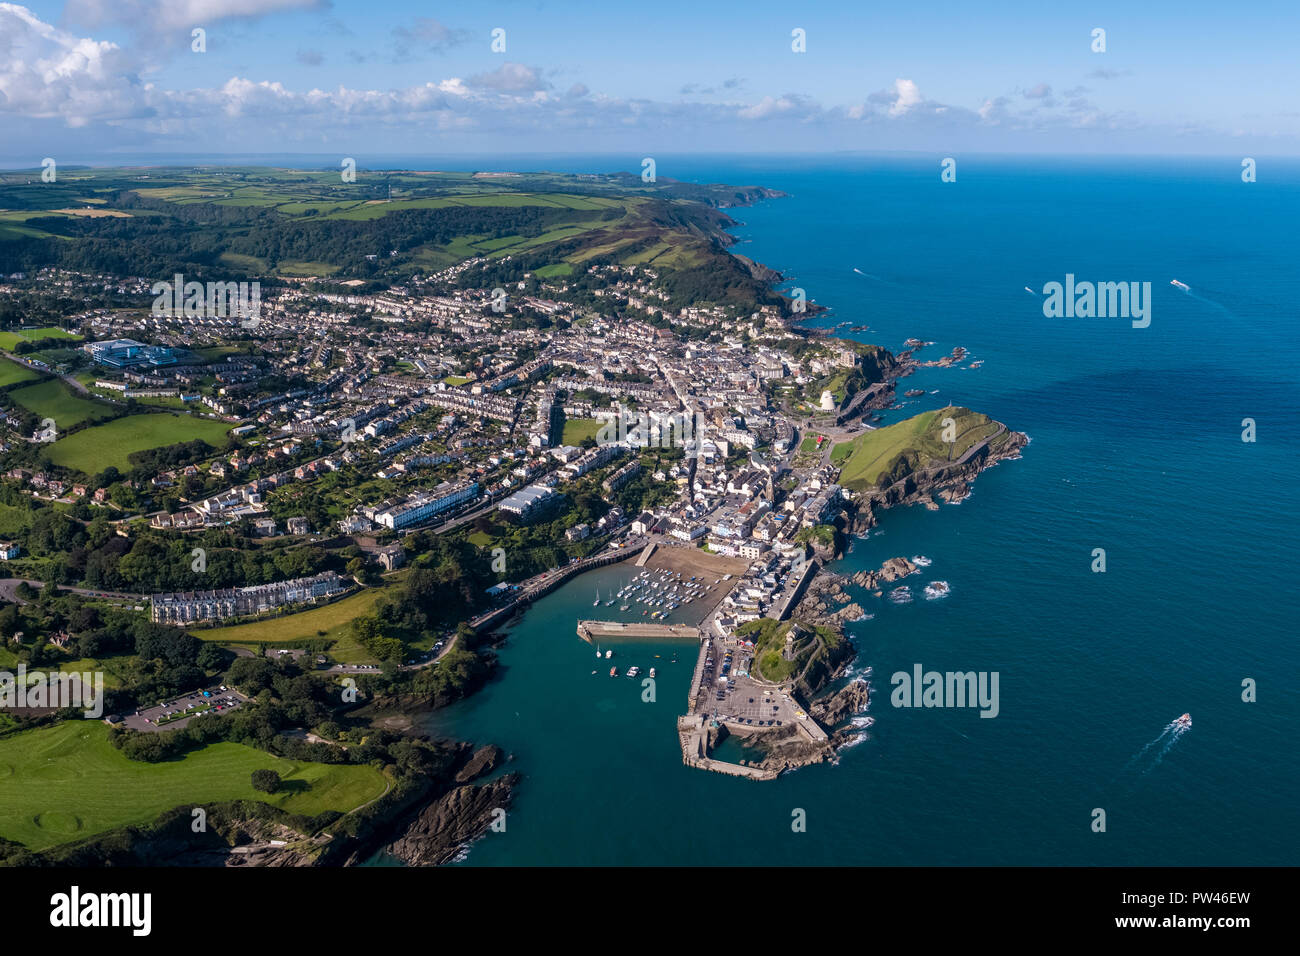 United Kingdom, Devon, North Devon coast, Ilfracombe, aerial view over the town Stock Photo